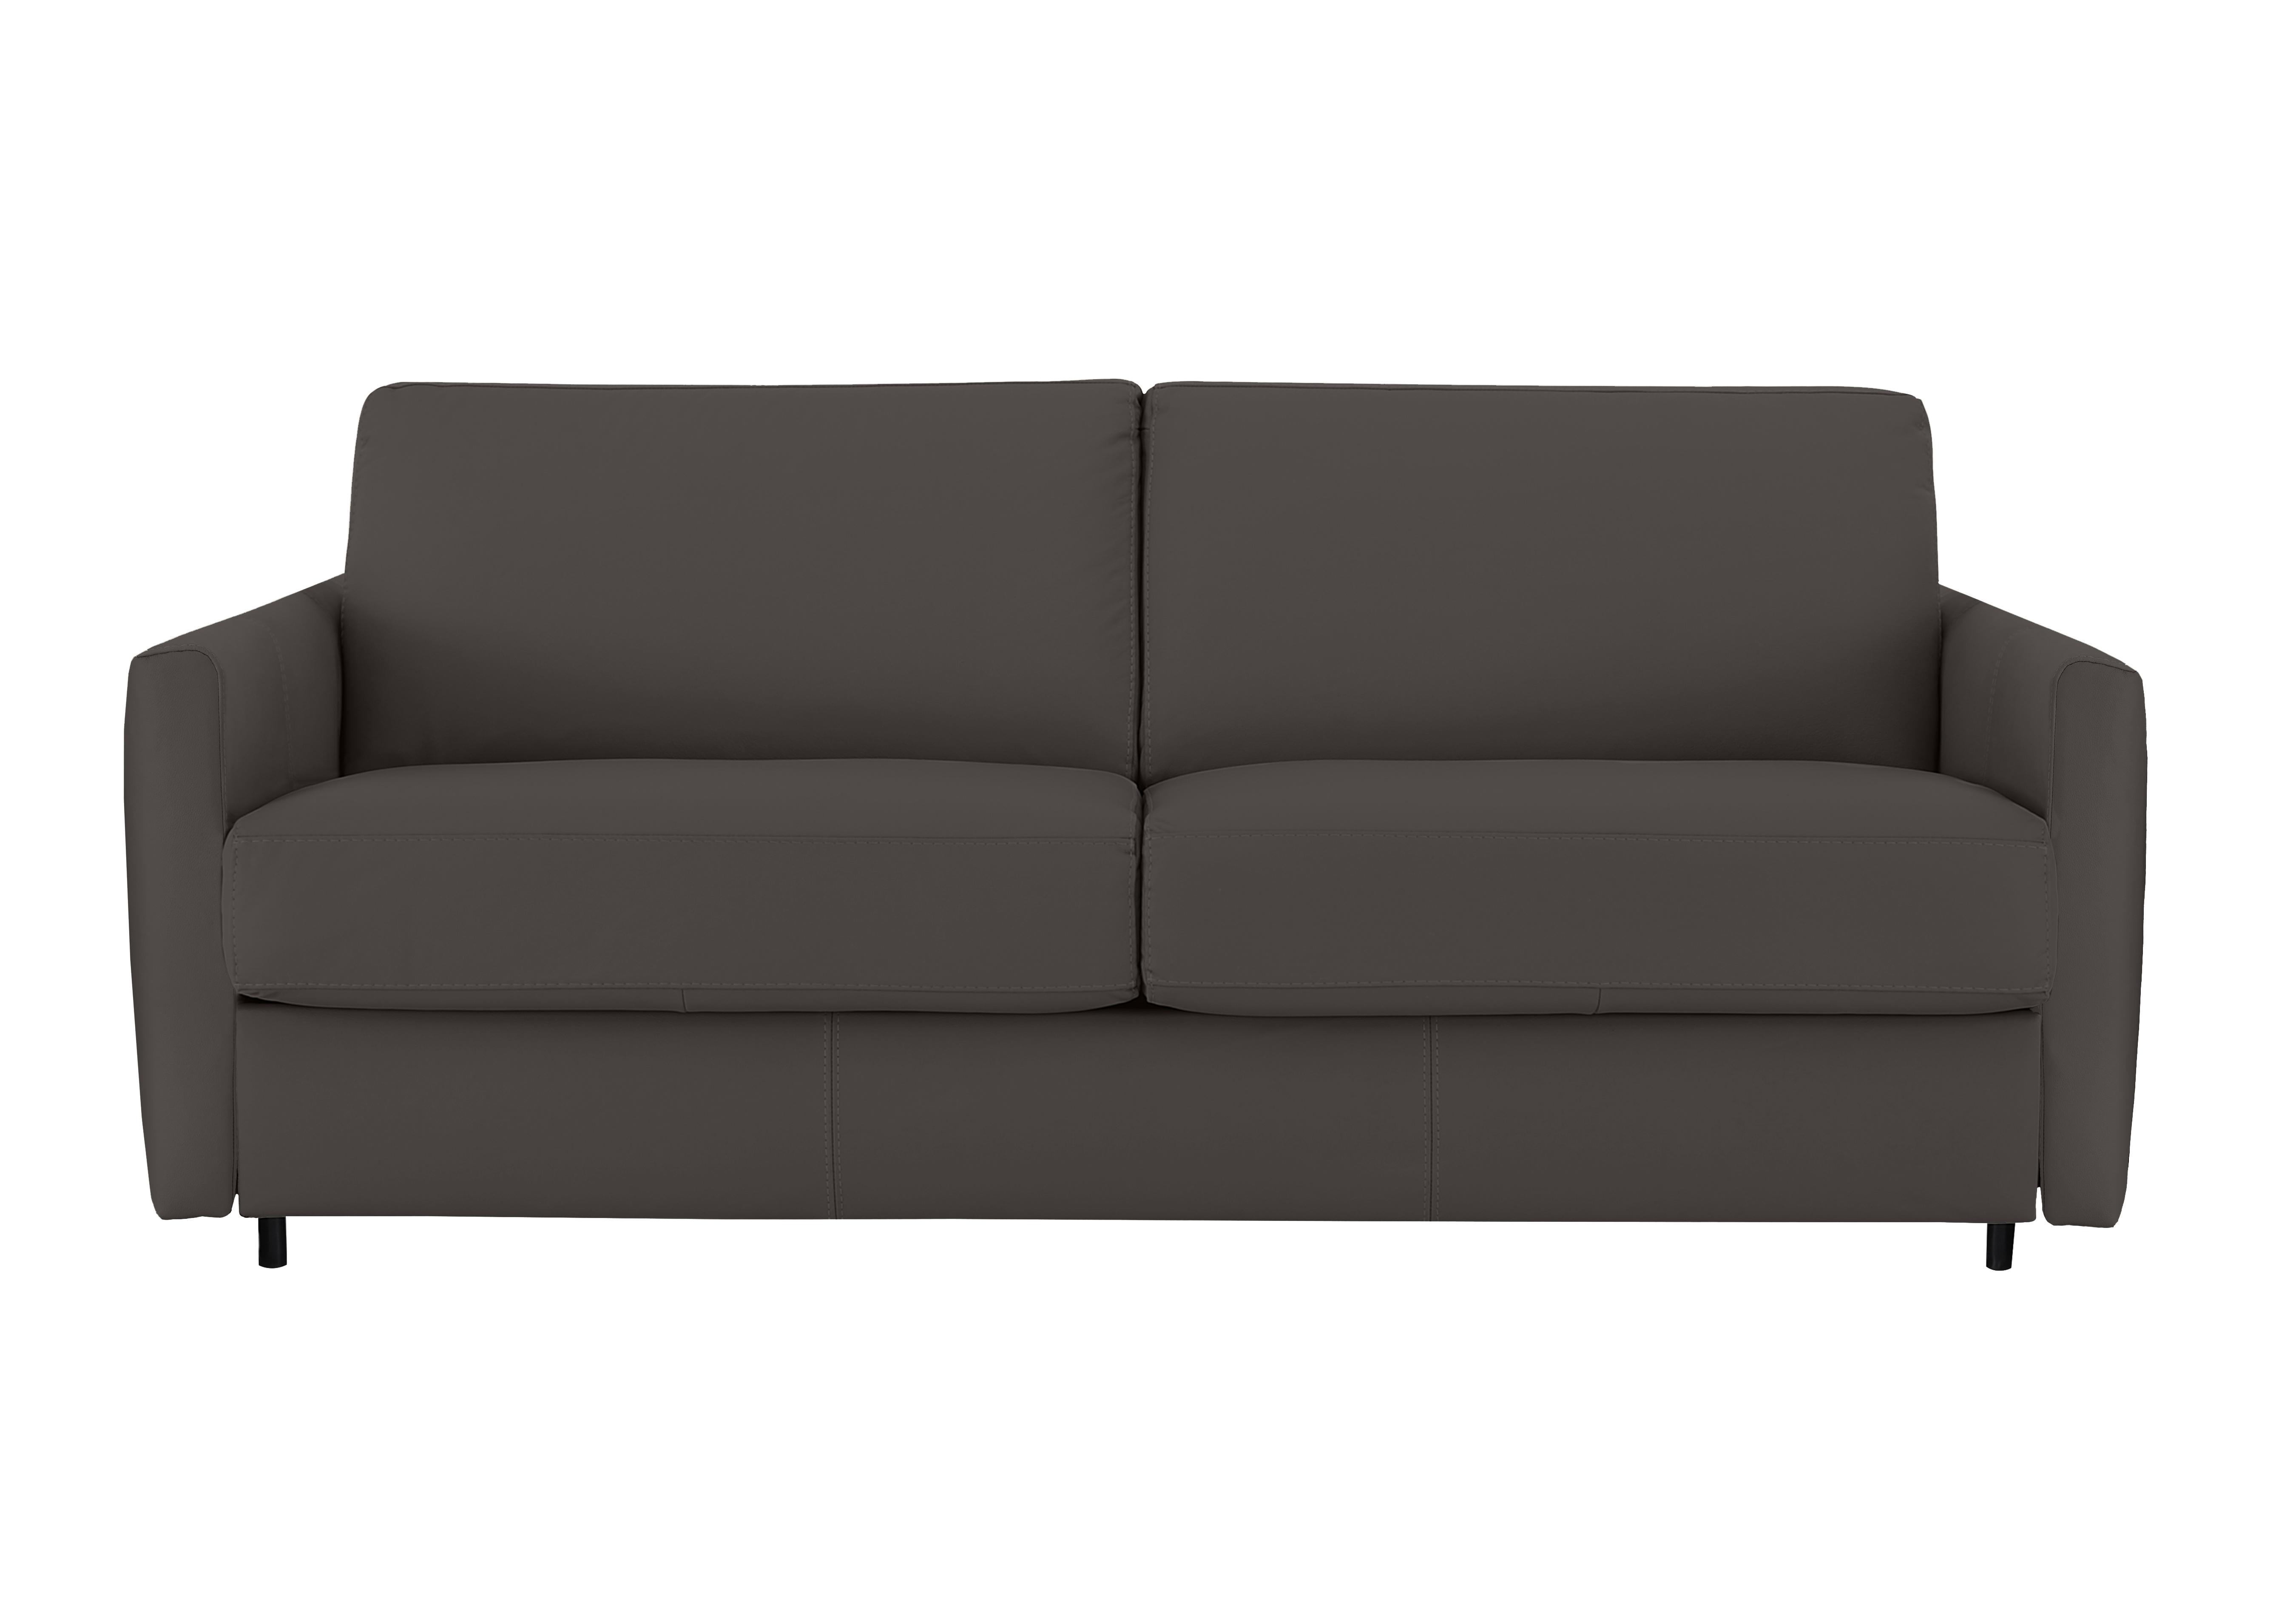 Alcova 3 Seater Leather Sofa Bed with Slim Arms in Torello Grigio Scuro 327 on Furniture Village